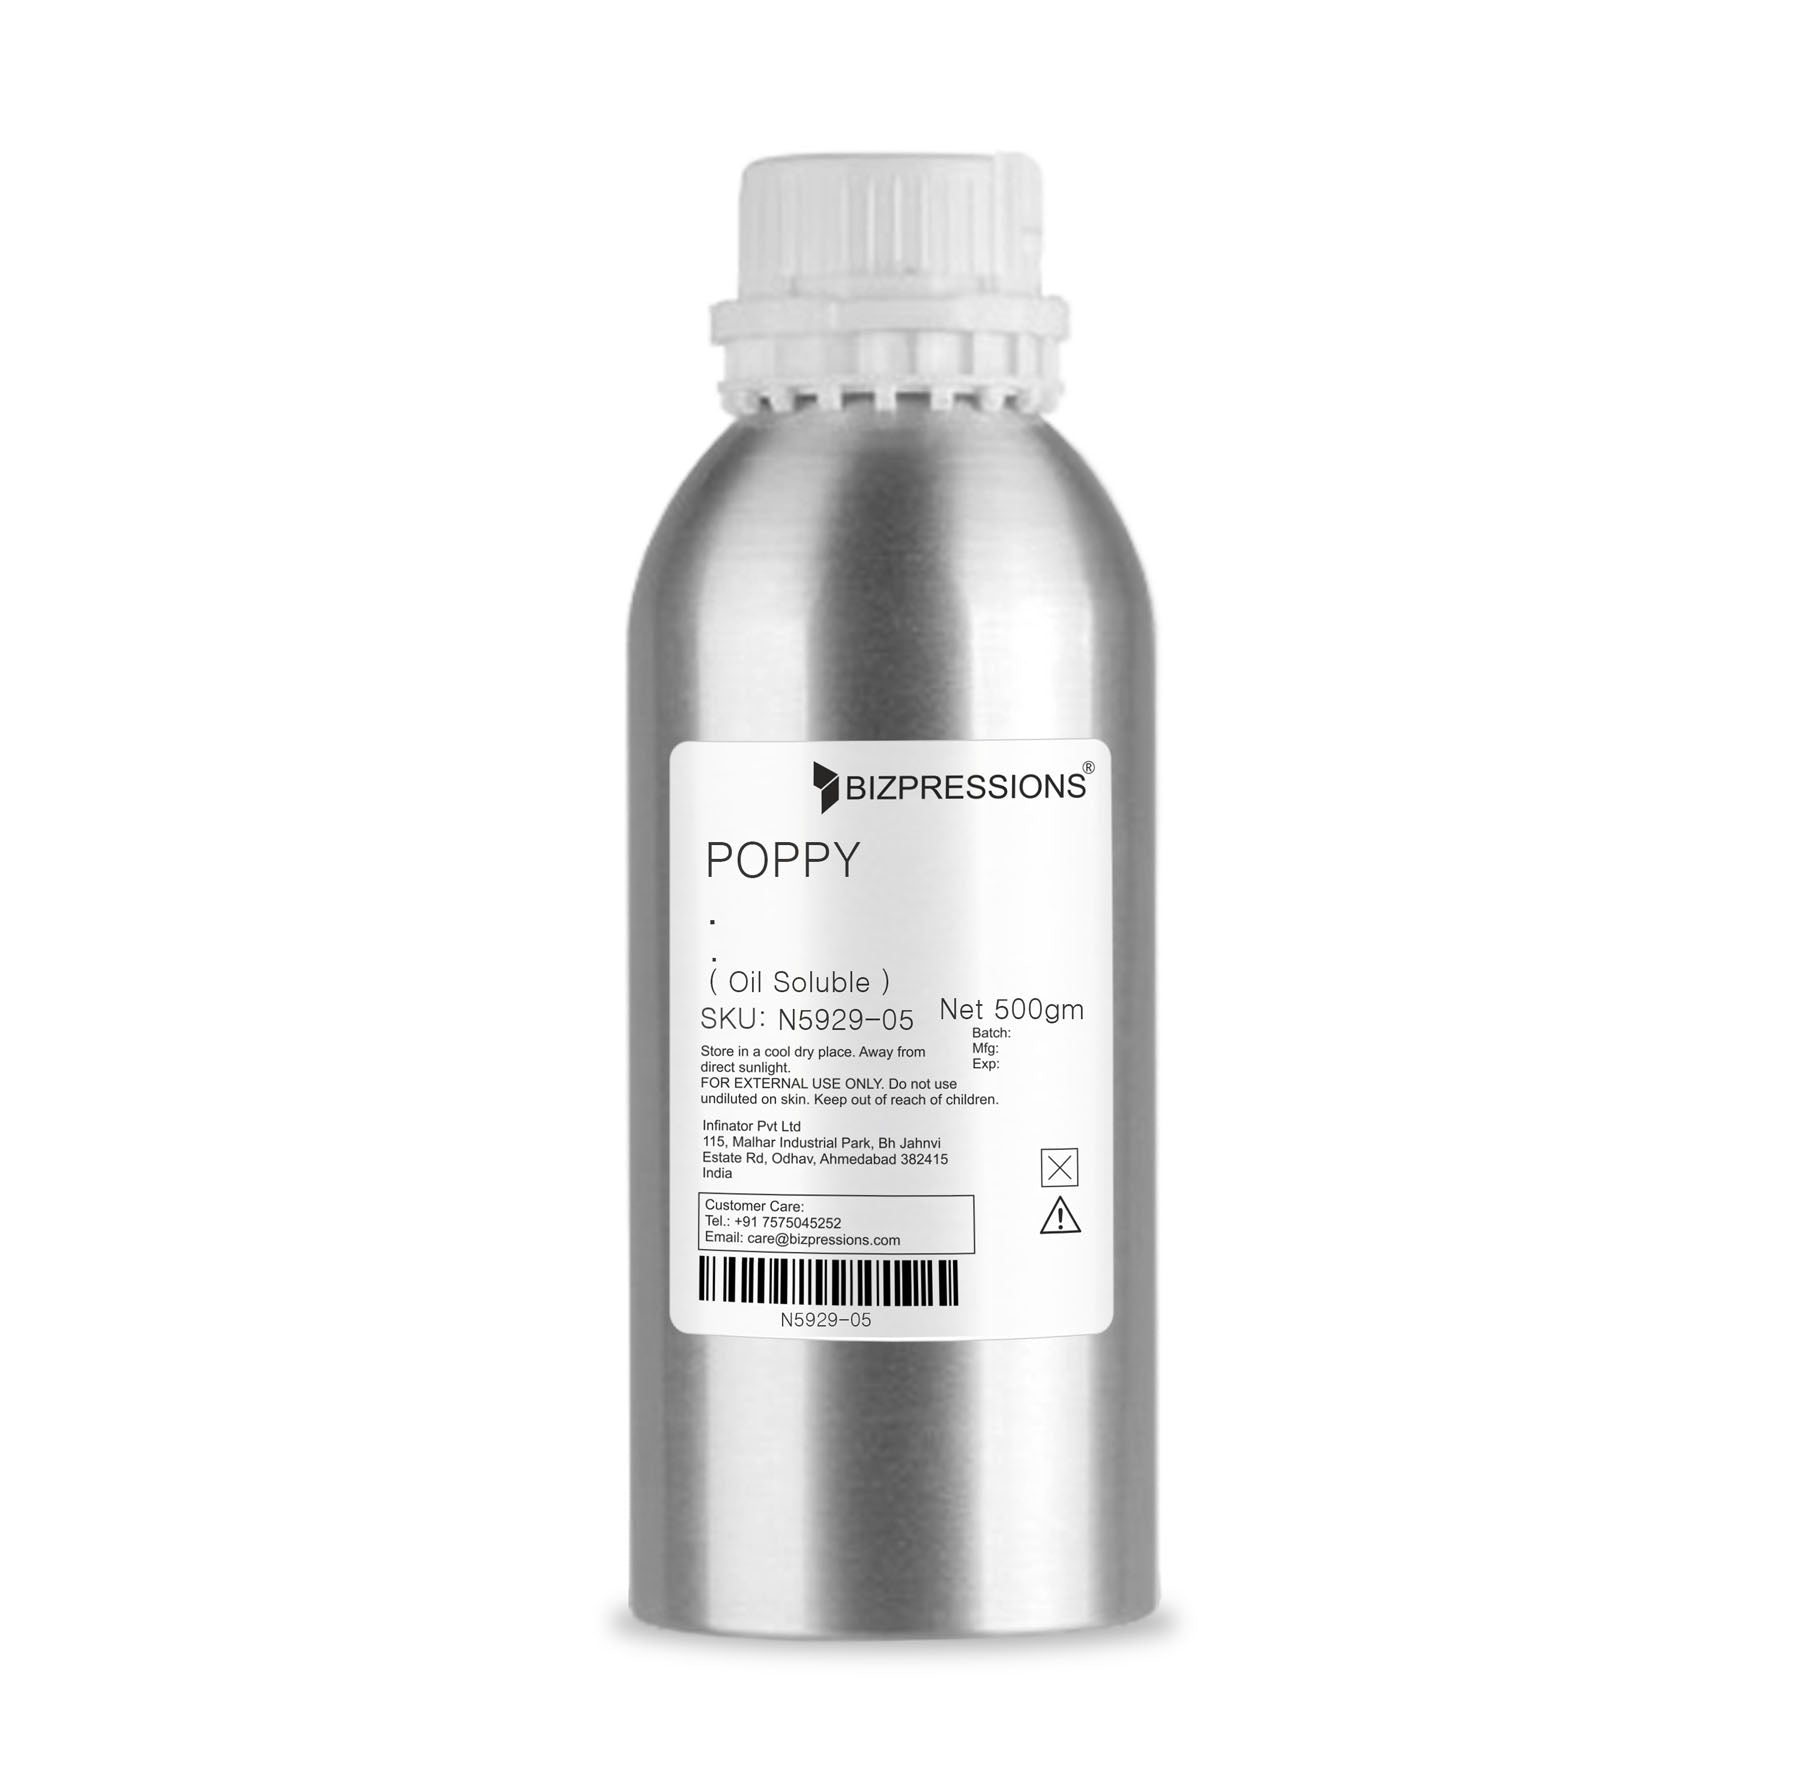 POPPY - Fragrance ( Oil Soluble ) - 500 gm